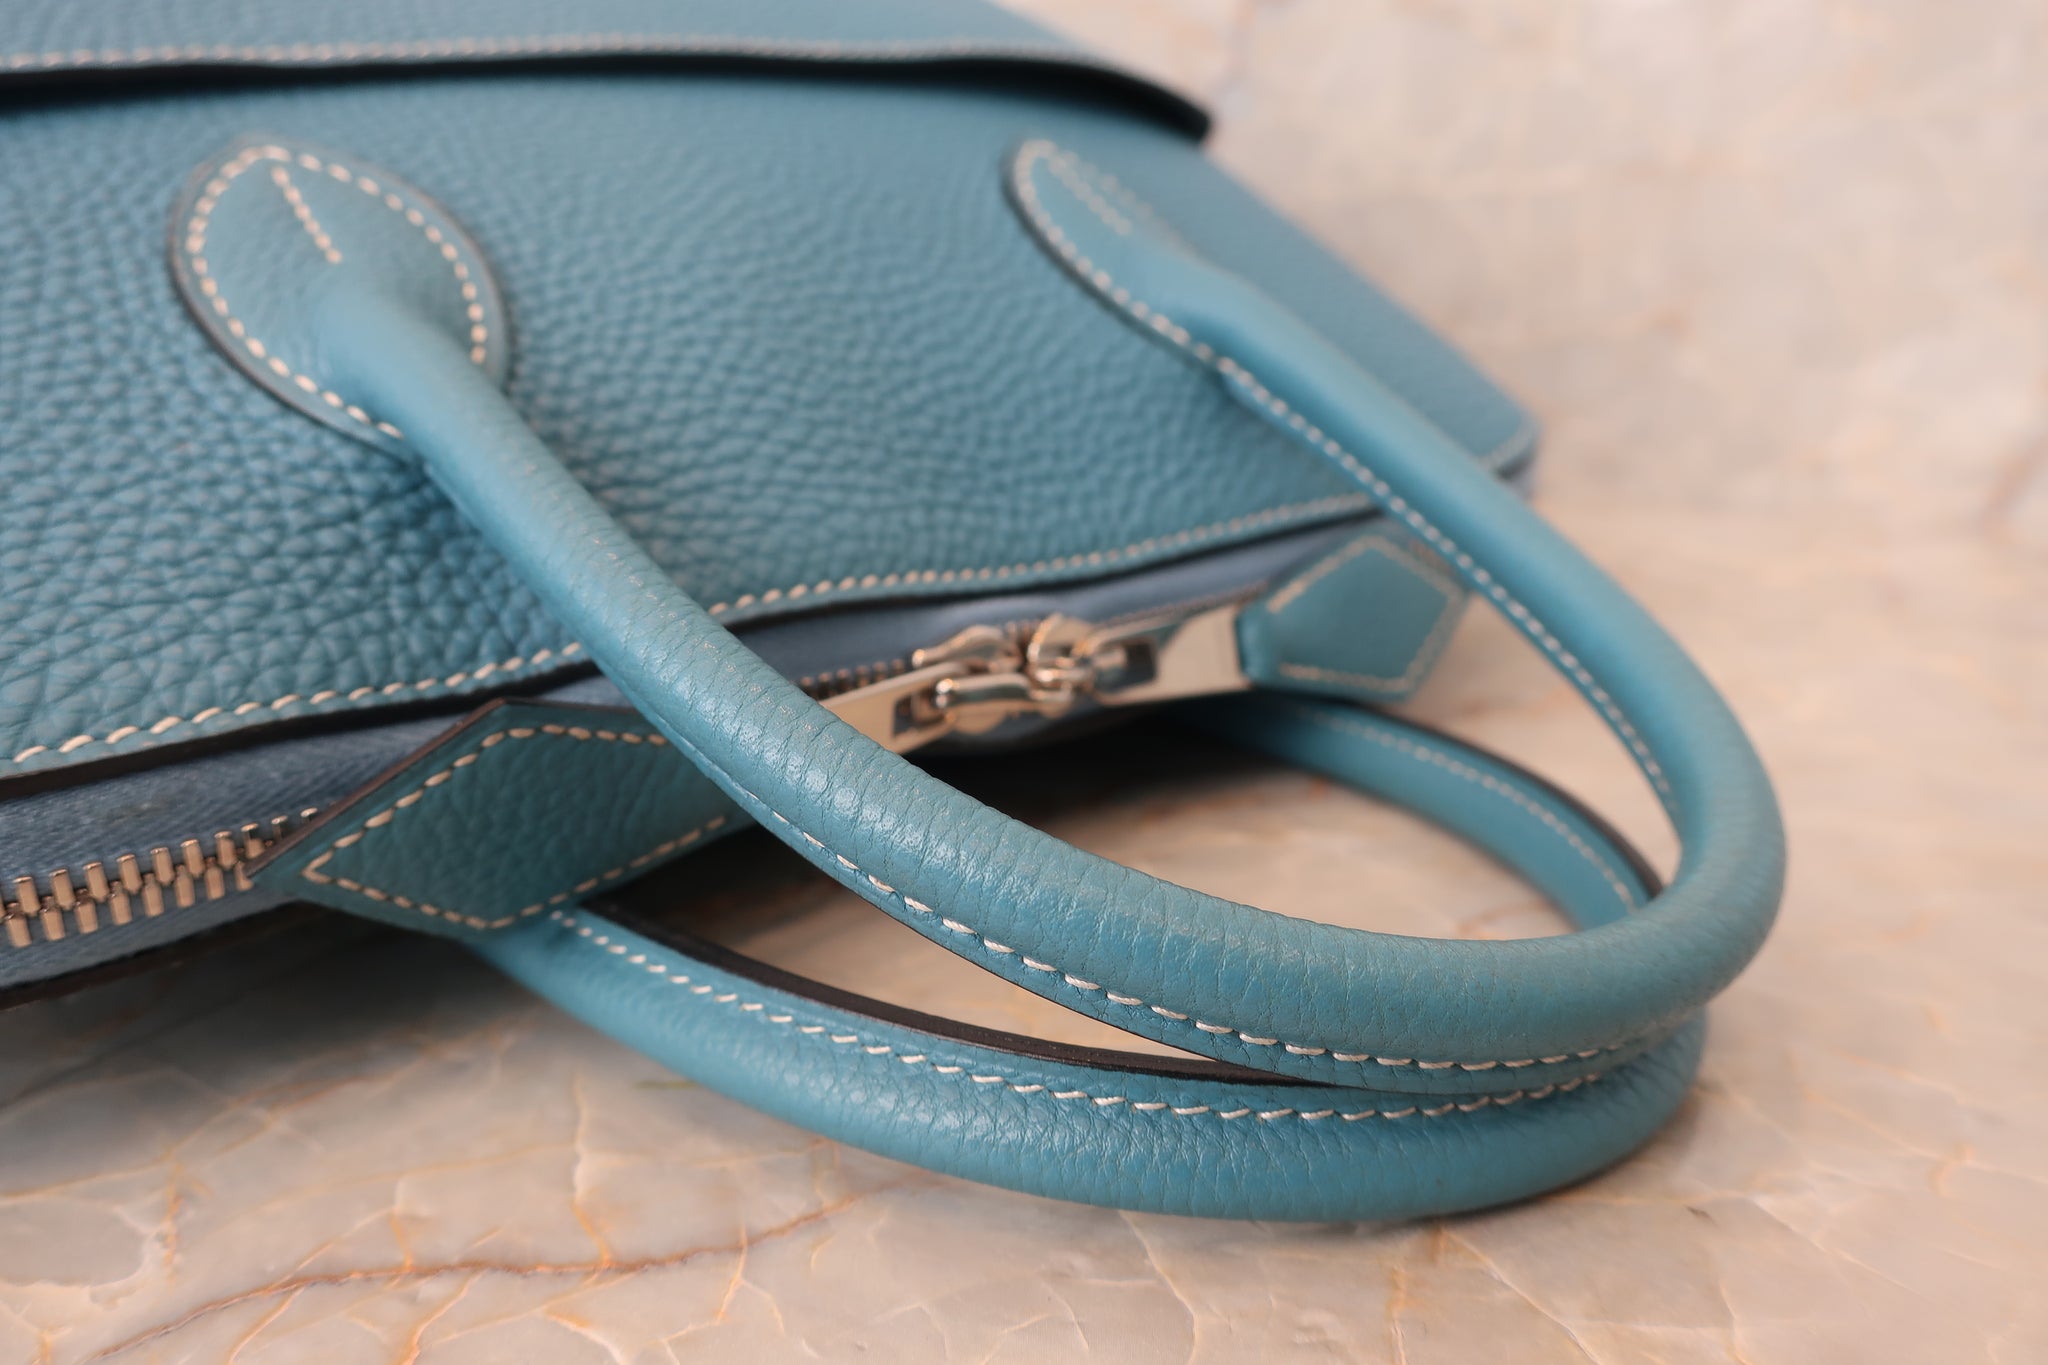 Hermès Bolide Handbag 376255